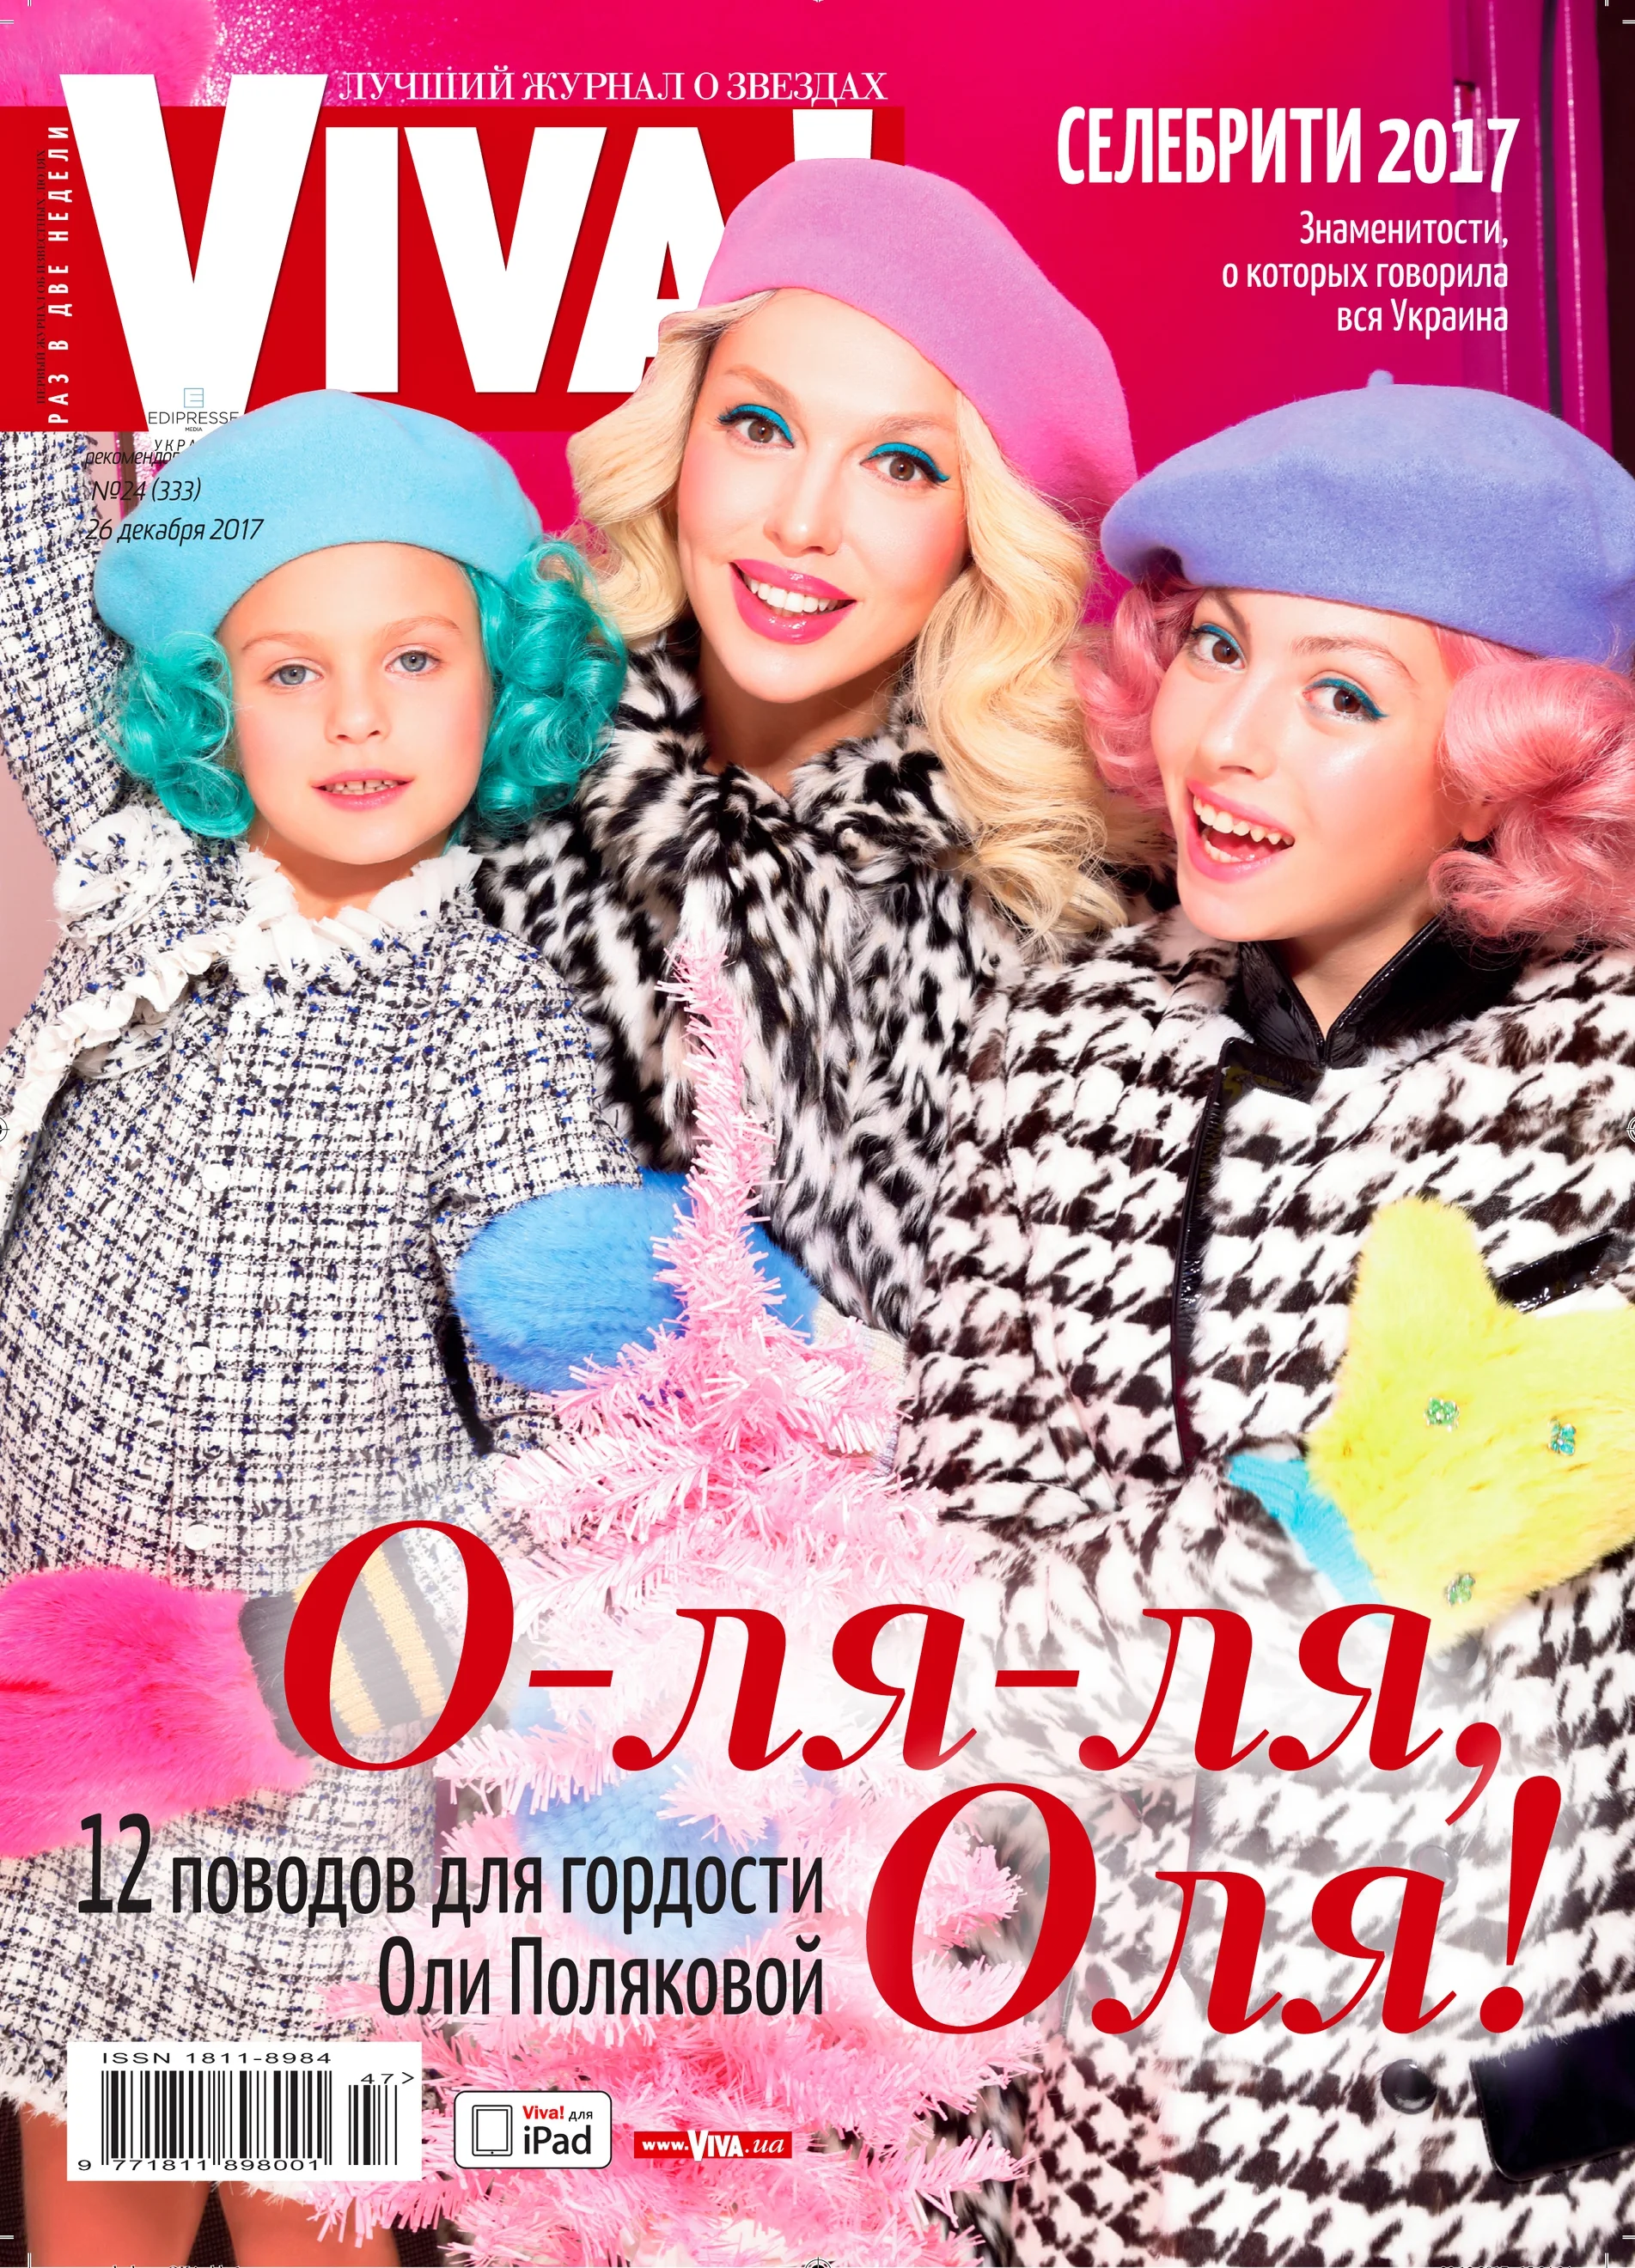 Полякова заинтриговала участием в нацотборе на 'Евровидение 2018' и показала дочерей - фото 359755